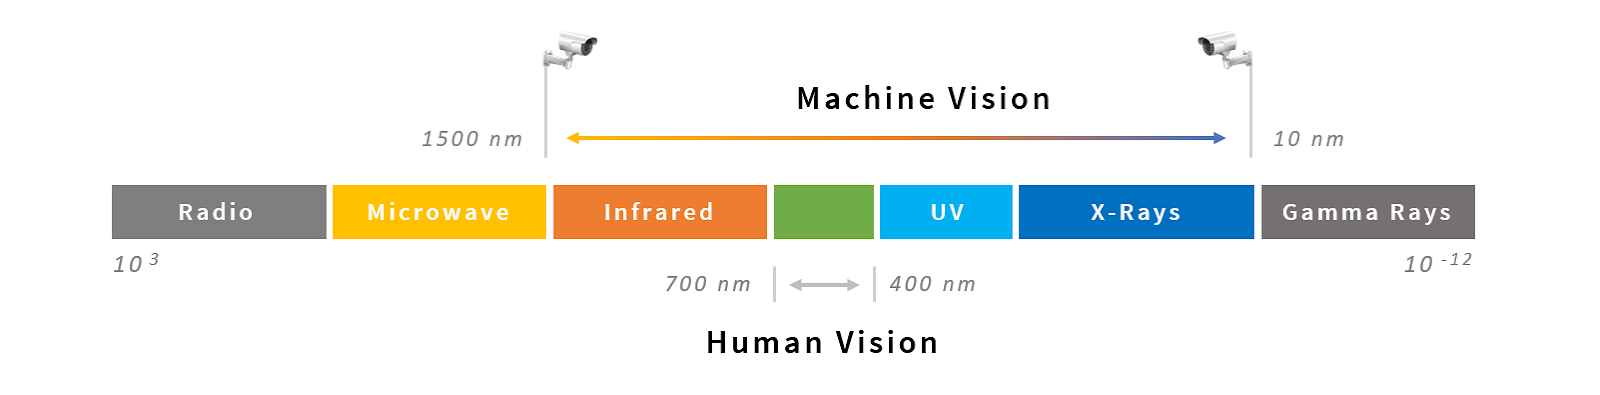 Machine Vision visible spectrum